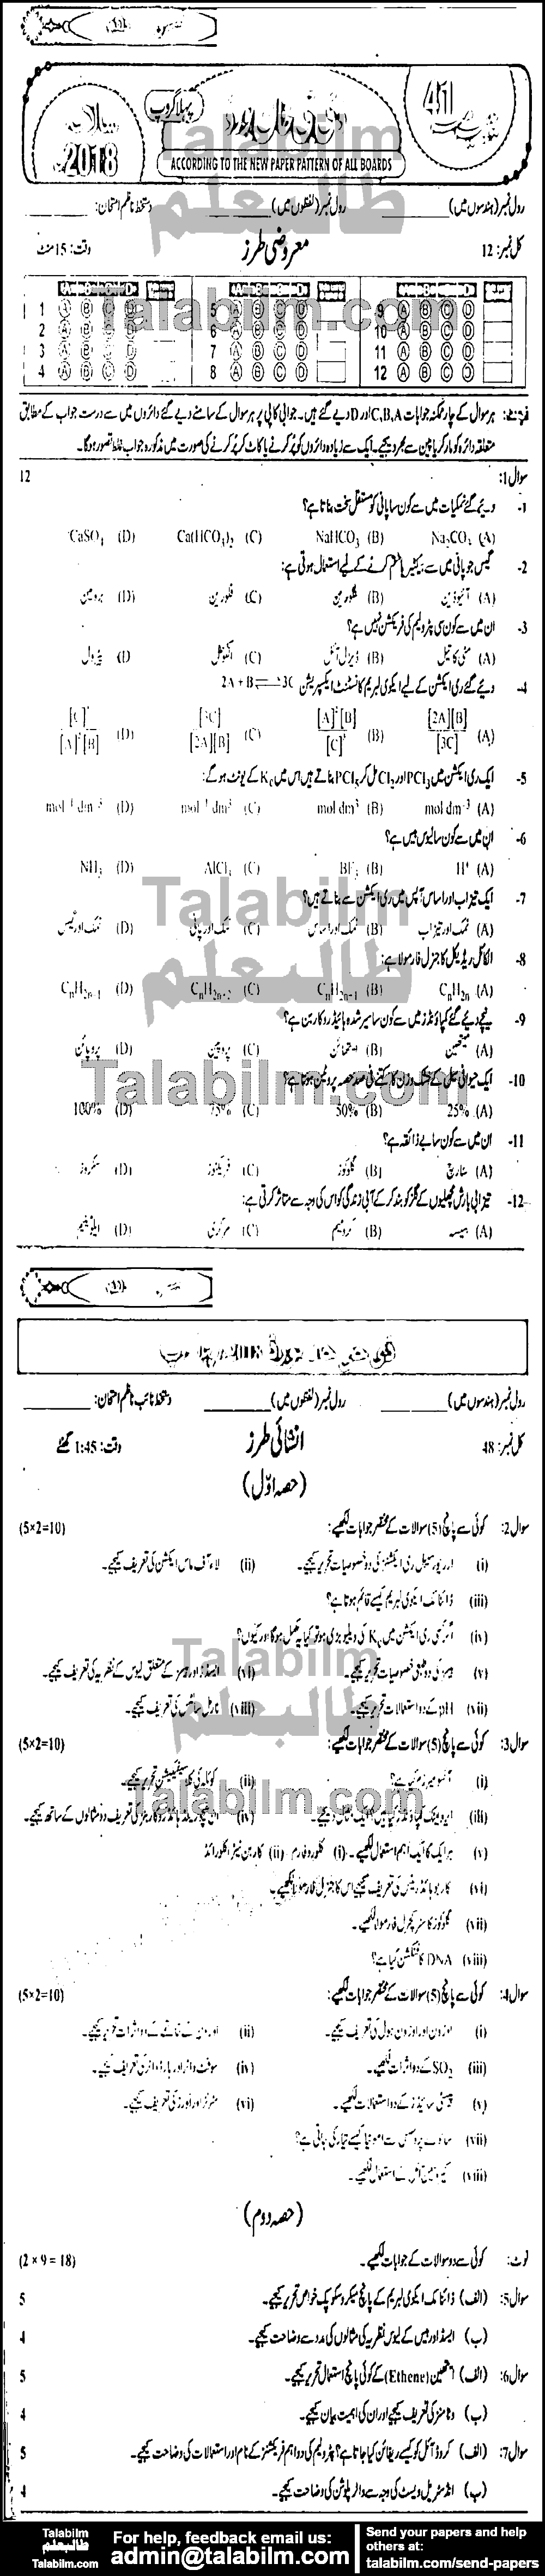 Chemistry 0 past paper for Urdu Medium 2018 Group-I